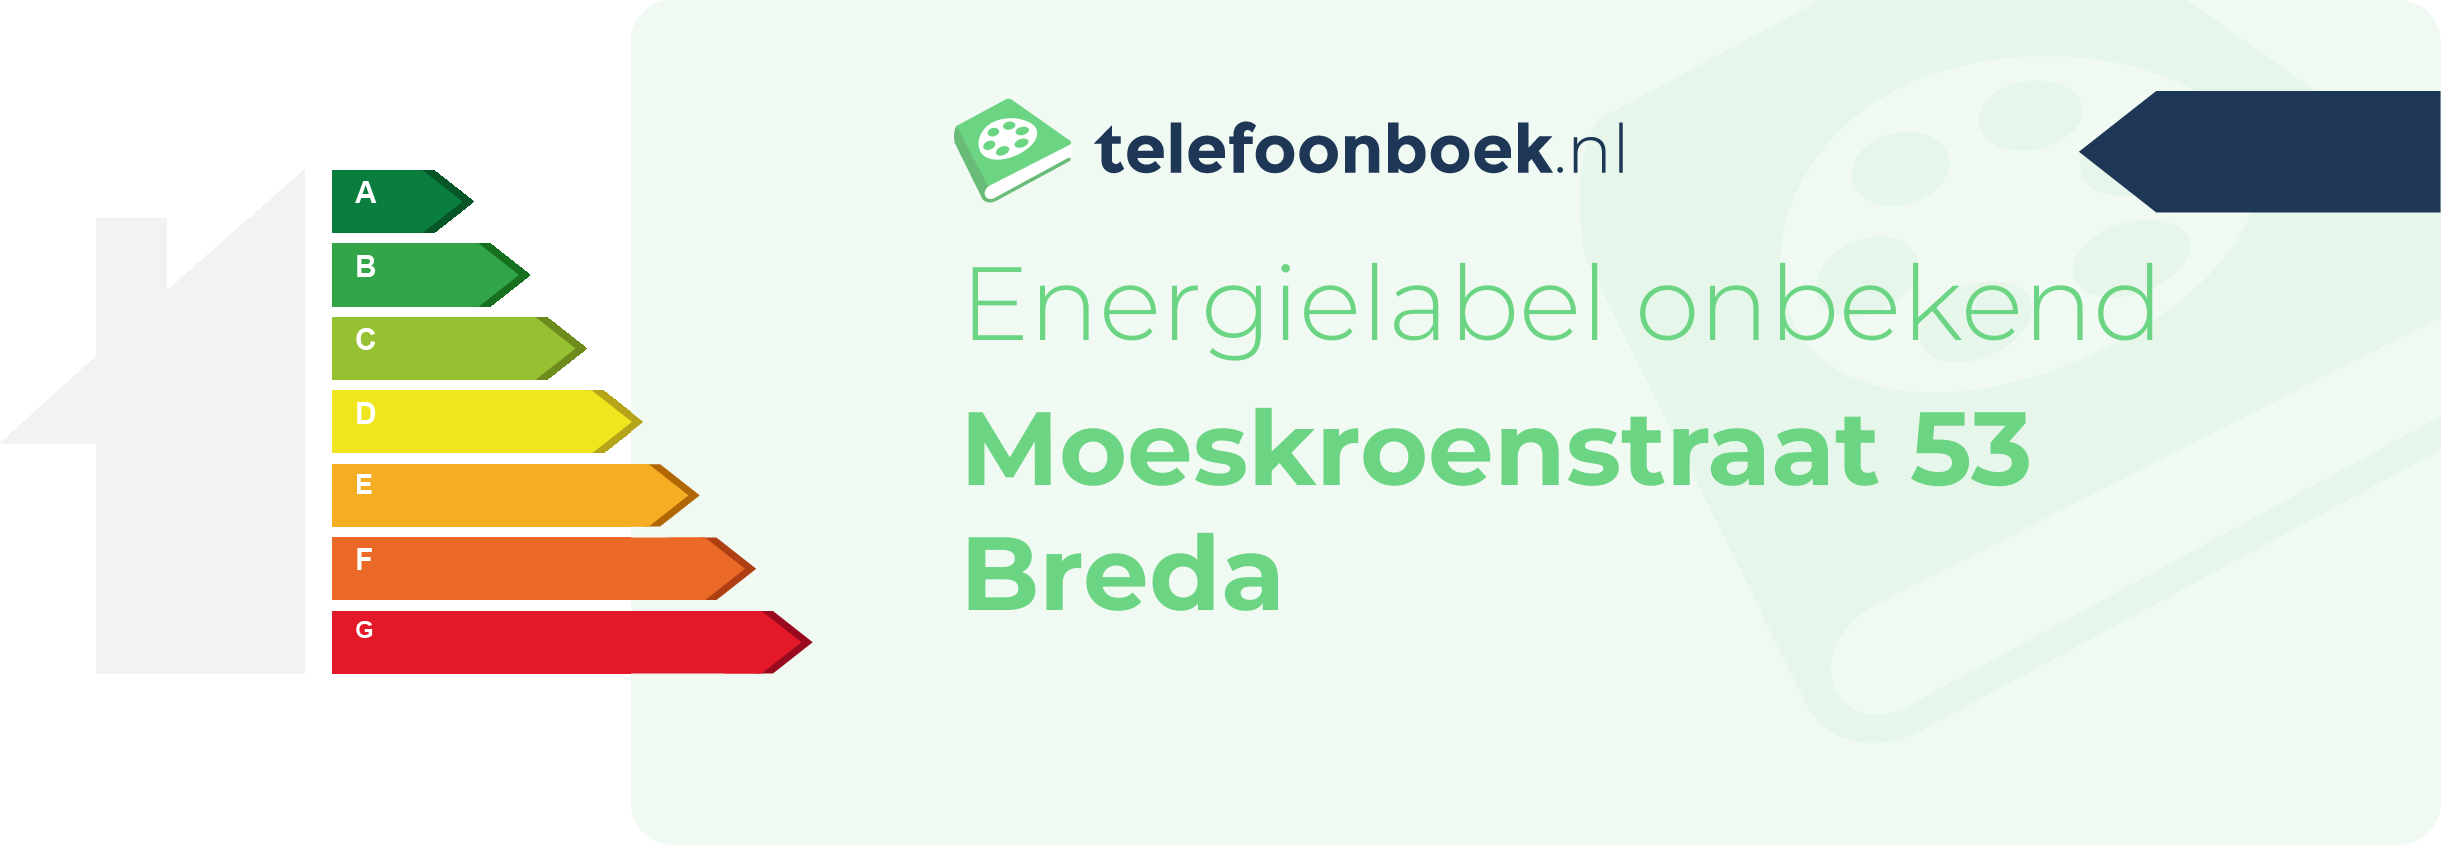 Energielabel Moeskroenstraat 53 Breda